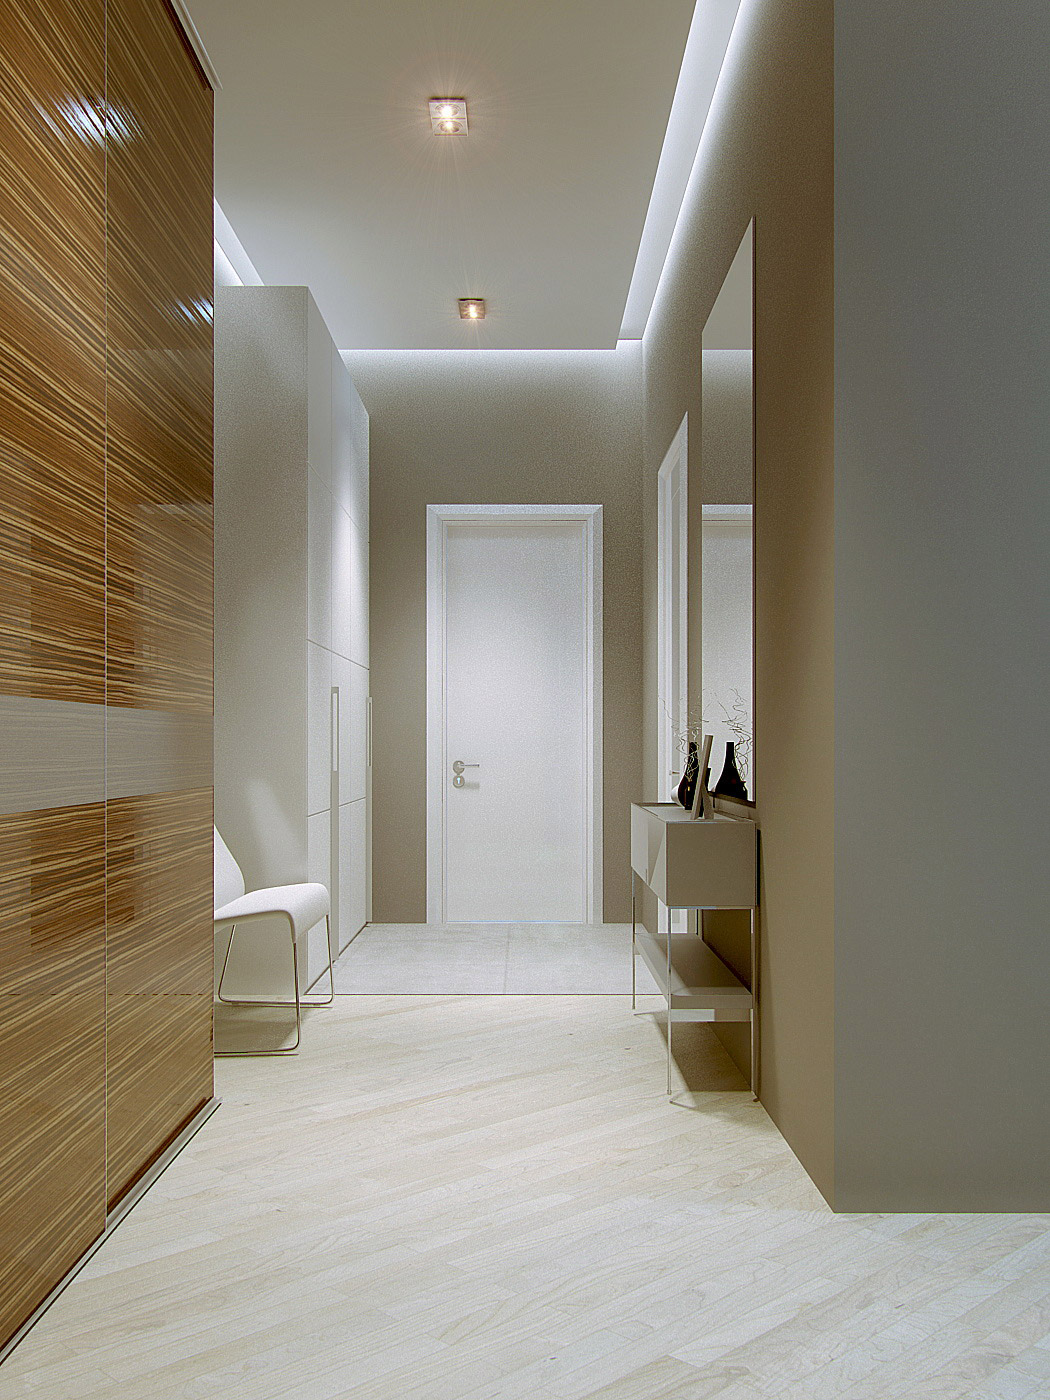 Плитка в коридор на пол в квартире дизайн фото